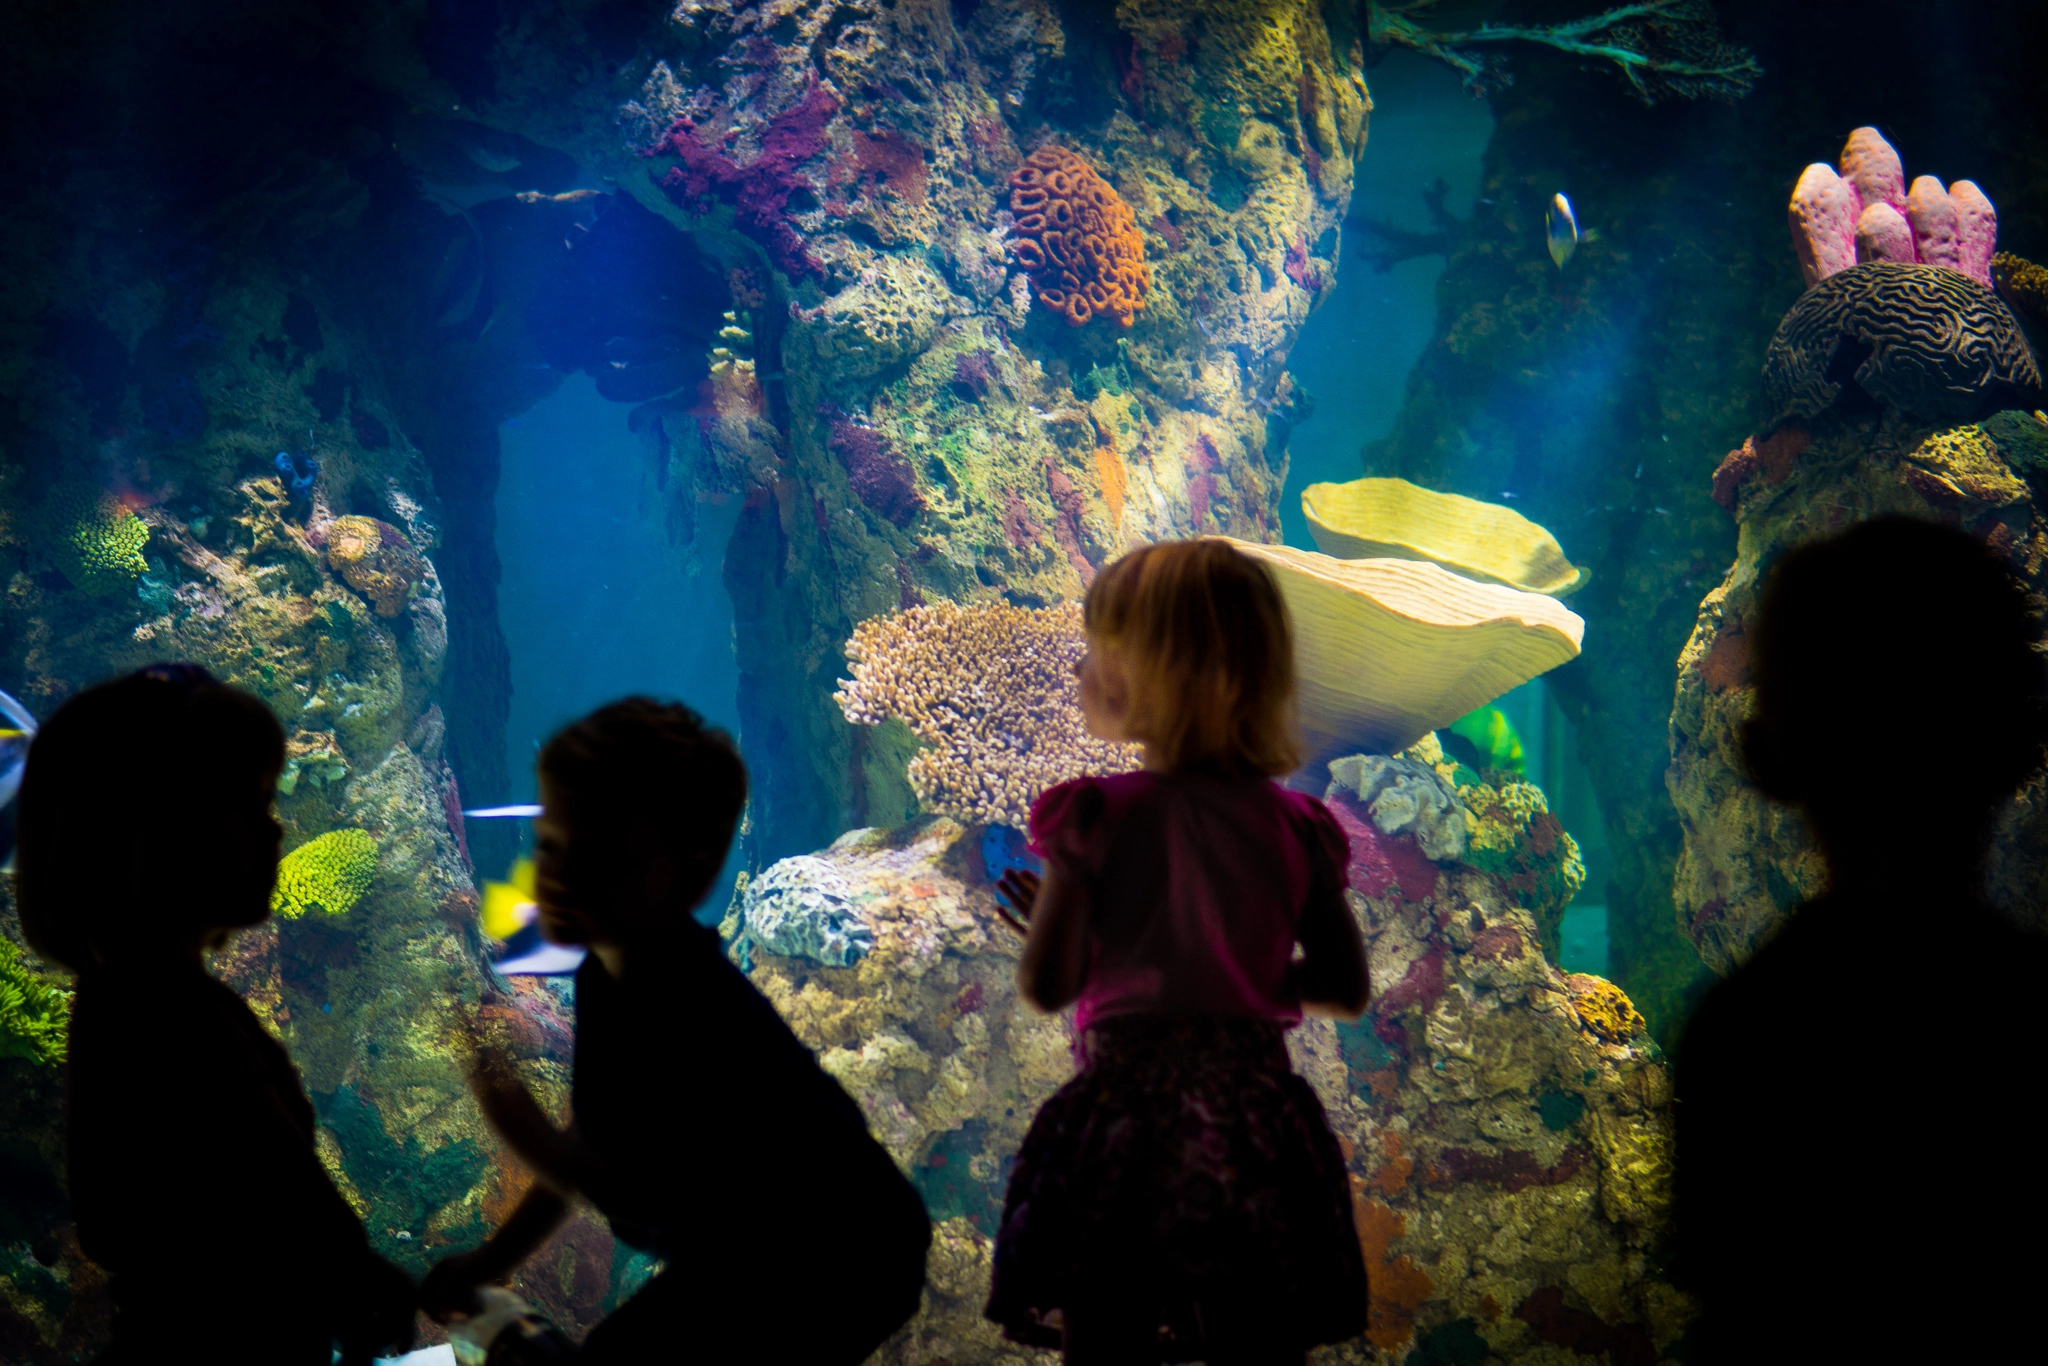 Sony a6300 sample photo. "aquarium excitement" #photojambo photography